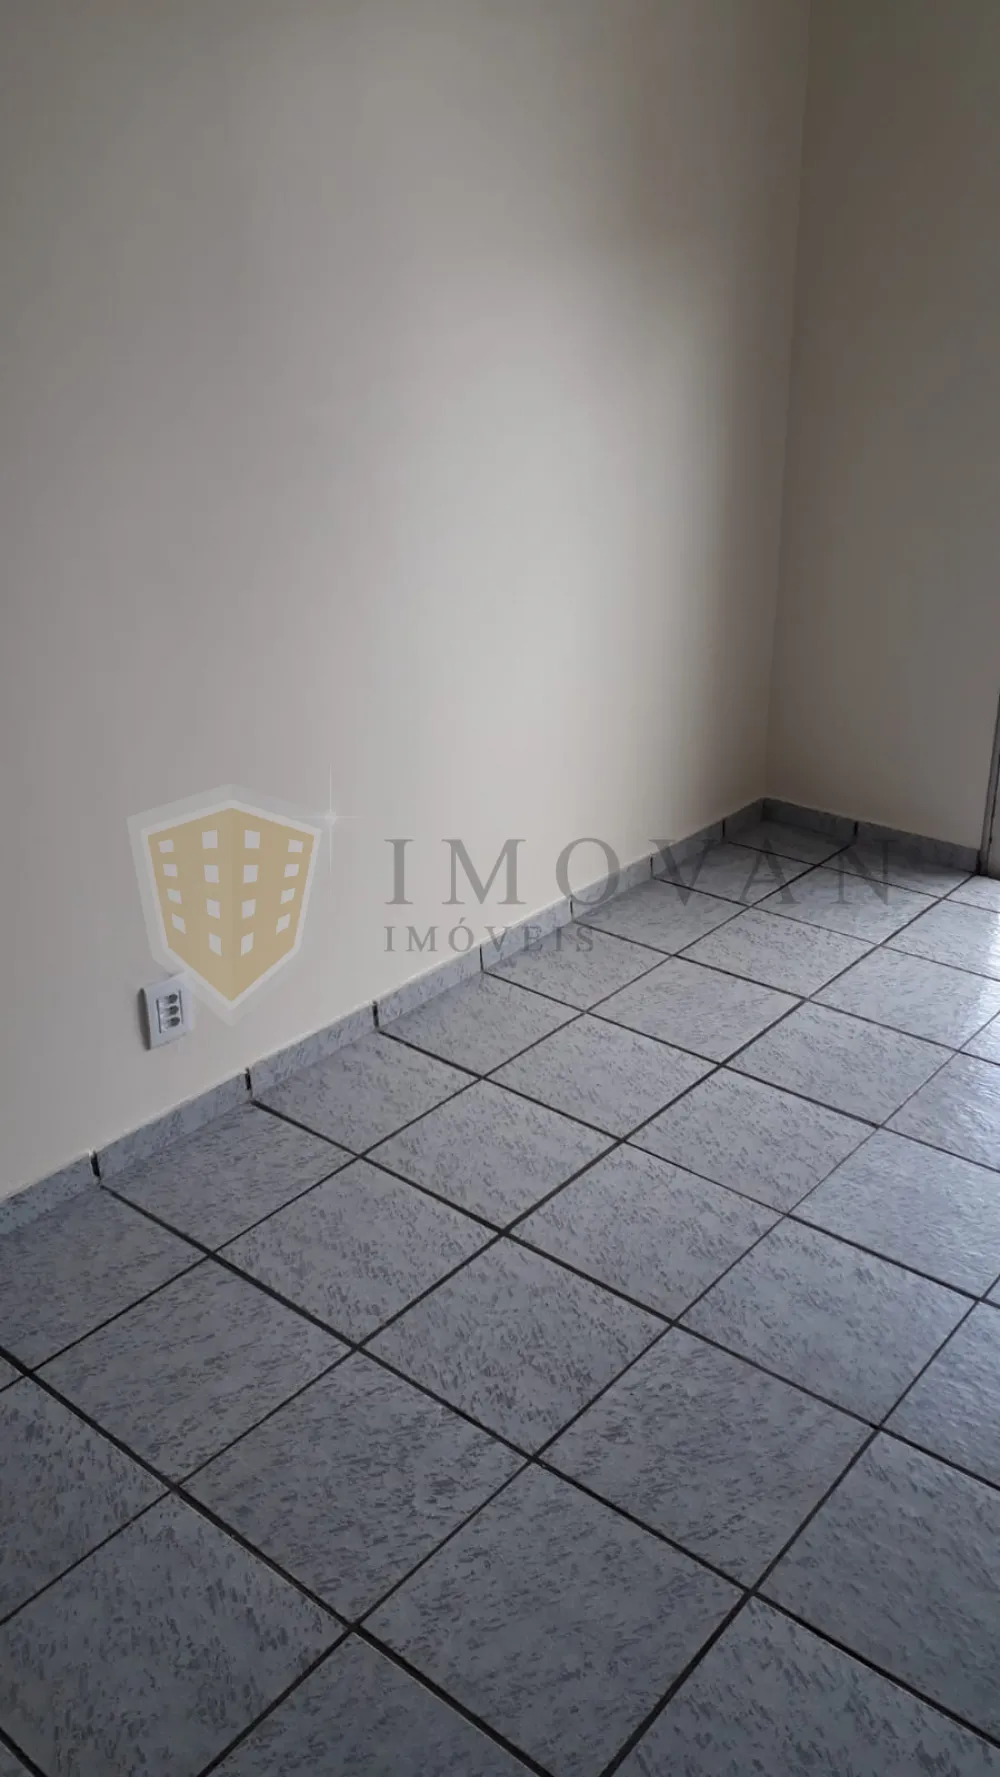 Comprar Apartamento / Padrão em Ribeirão Preto R$ 200.000,00 - Foto 11